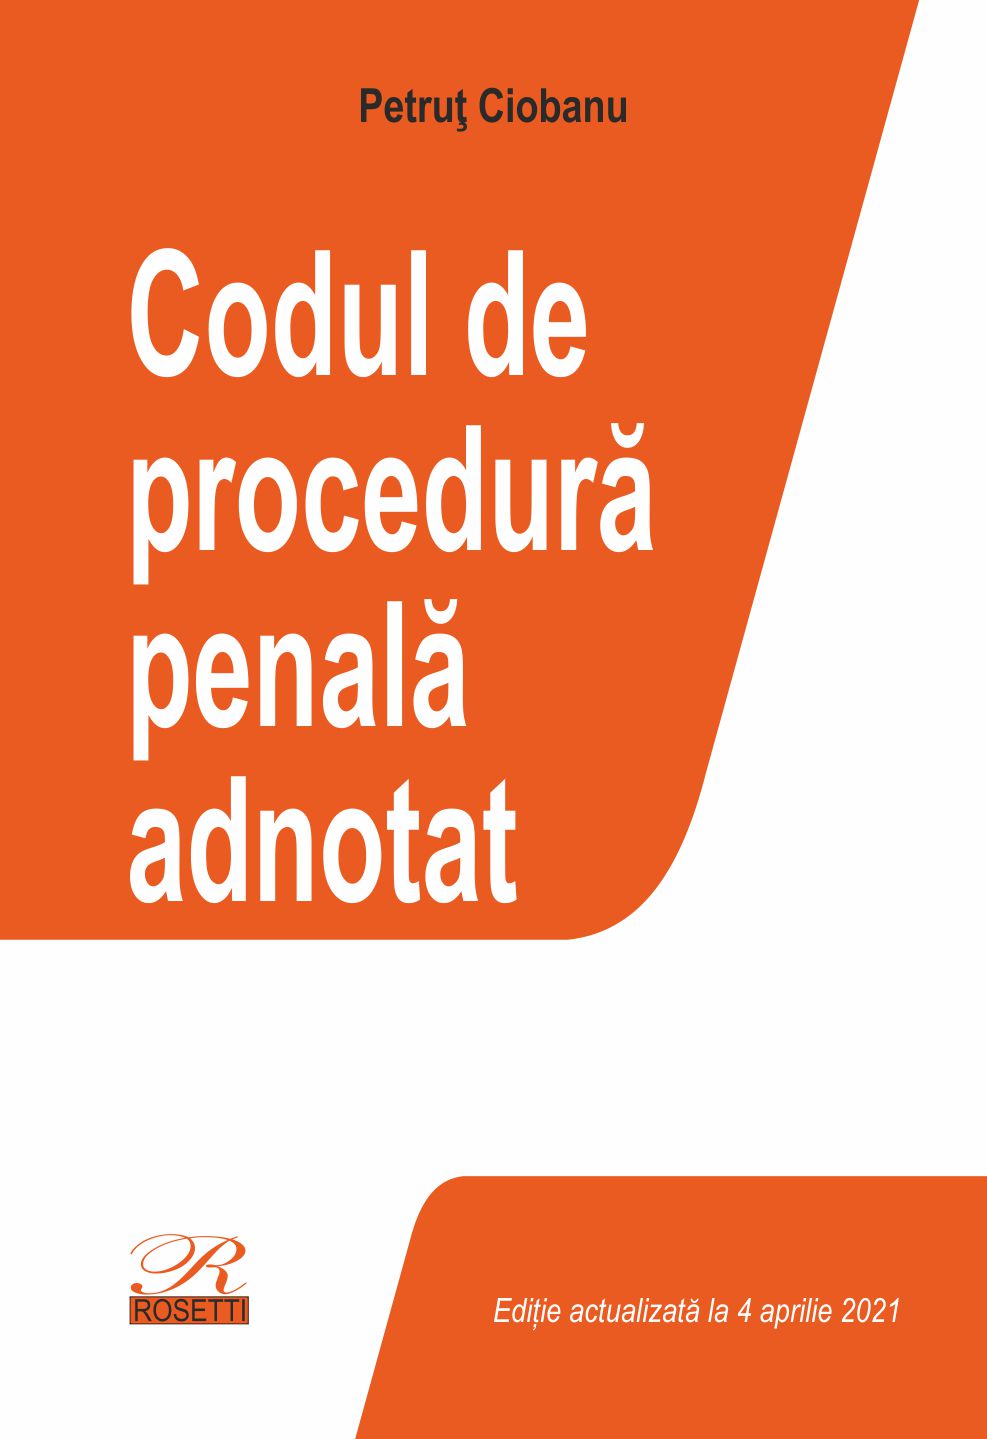 Codul de procedura penala adnotat | Petrut Ciobanu carturesti.ro poza bestsellers.ro